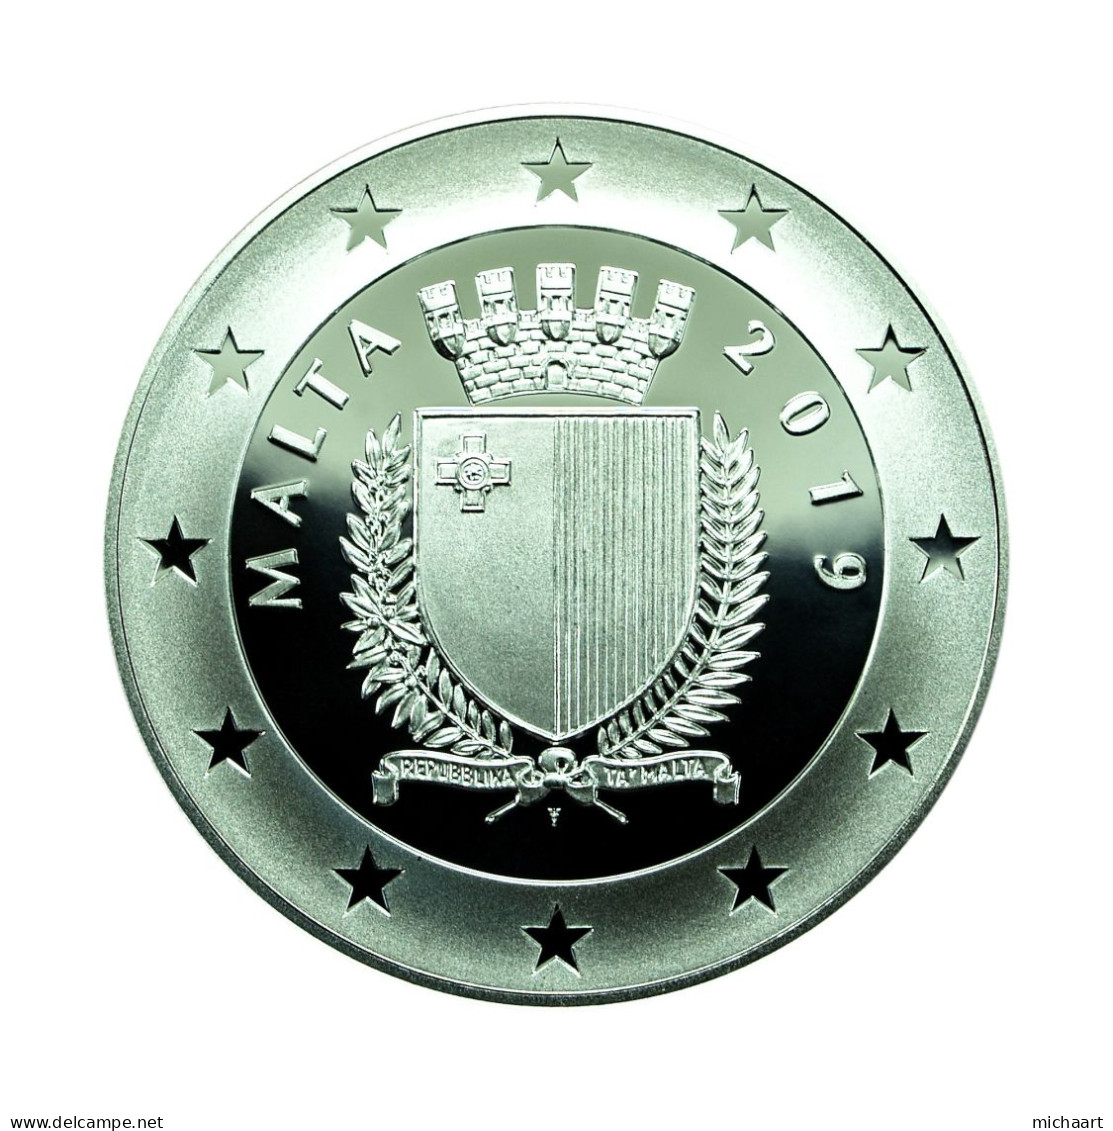 Malta Silver 2019 10 Euro Coin & Foil Stamp Proof Sette Giugno Riots 04180 - Malte